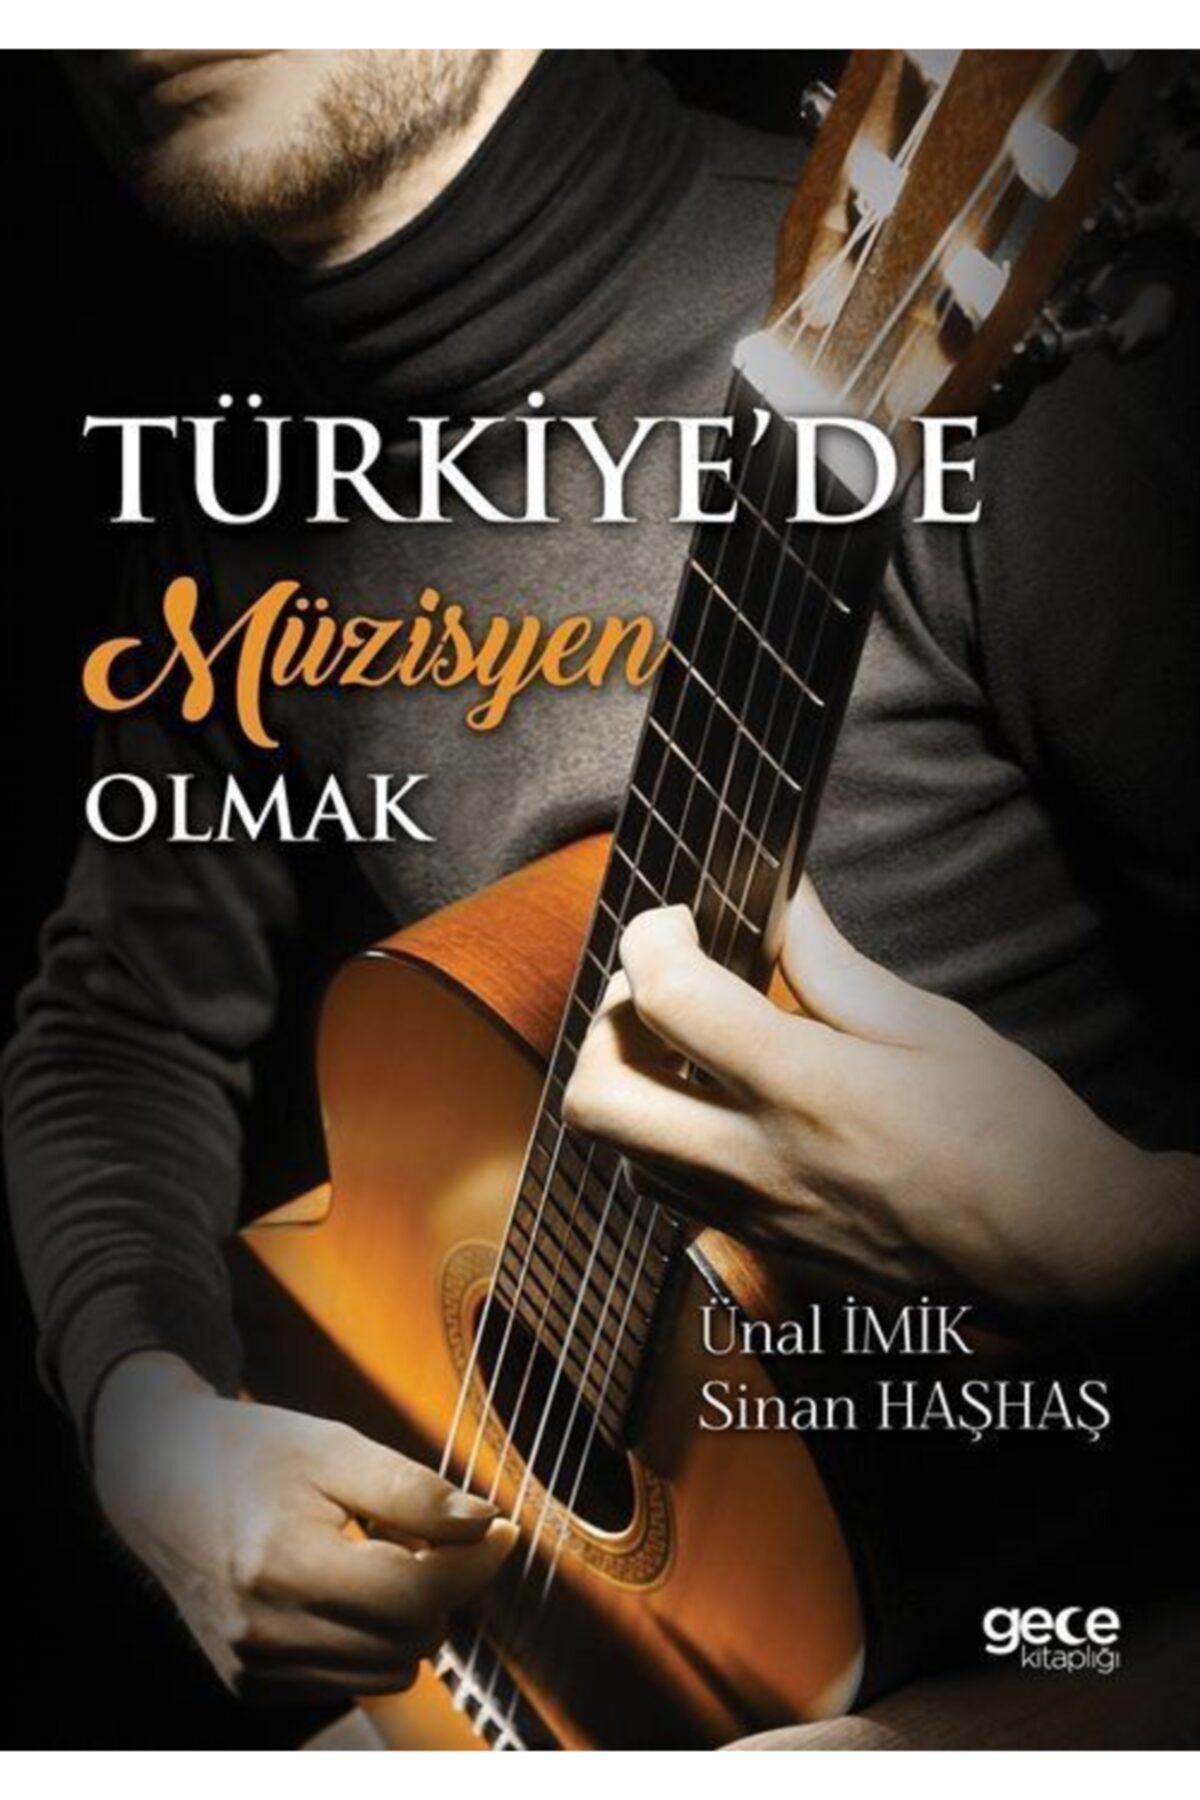 Gece Kitaplığı Türkiye'de Müzisyen Olmak